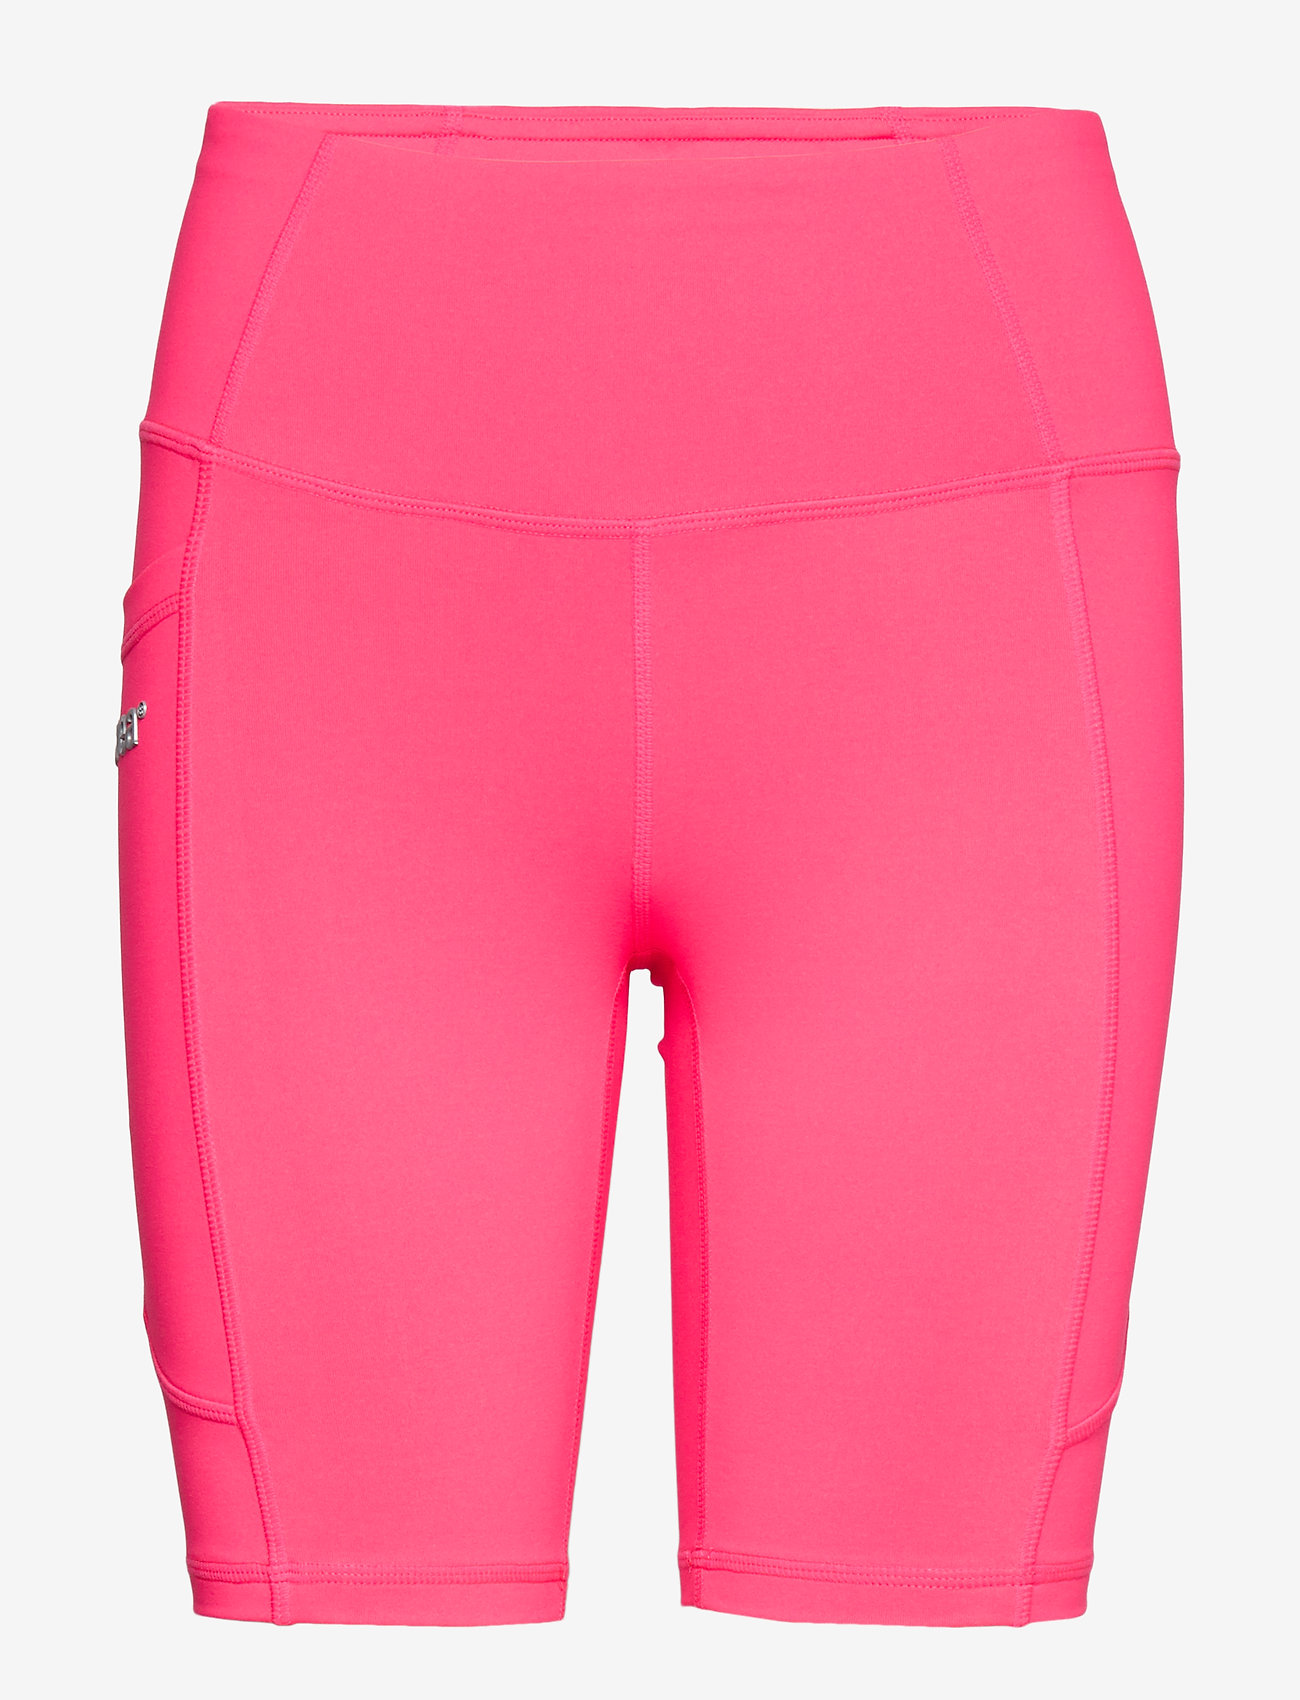 Svea - Svea Sport Shorts - träningsshorts - neon pink - 0